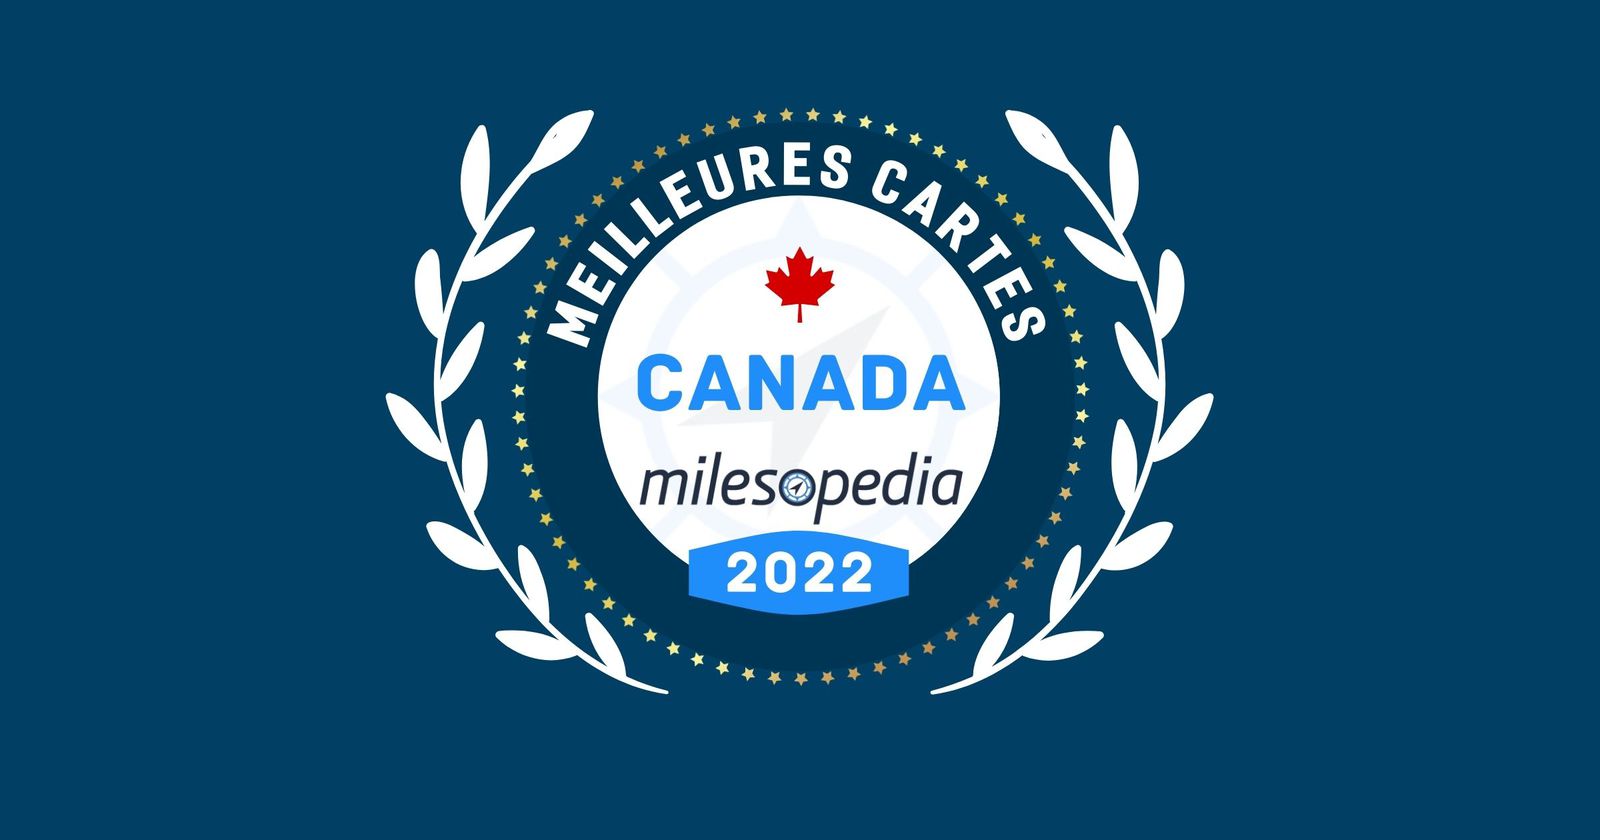 Classement Des Meilleures Cartes De Credit Canada 22 Milesopedia